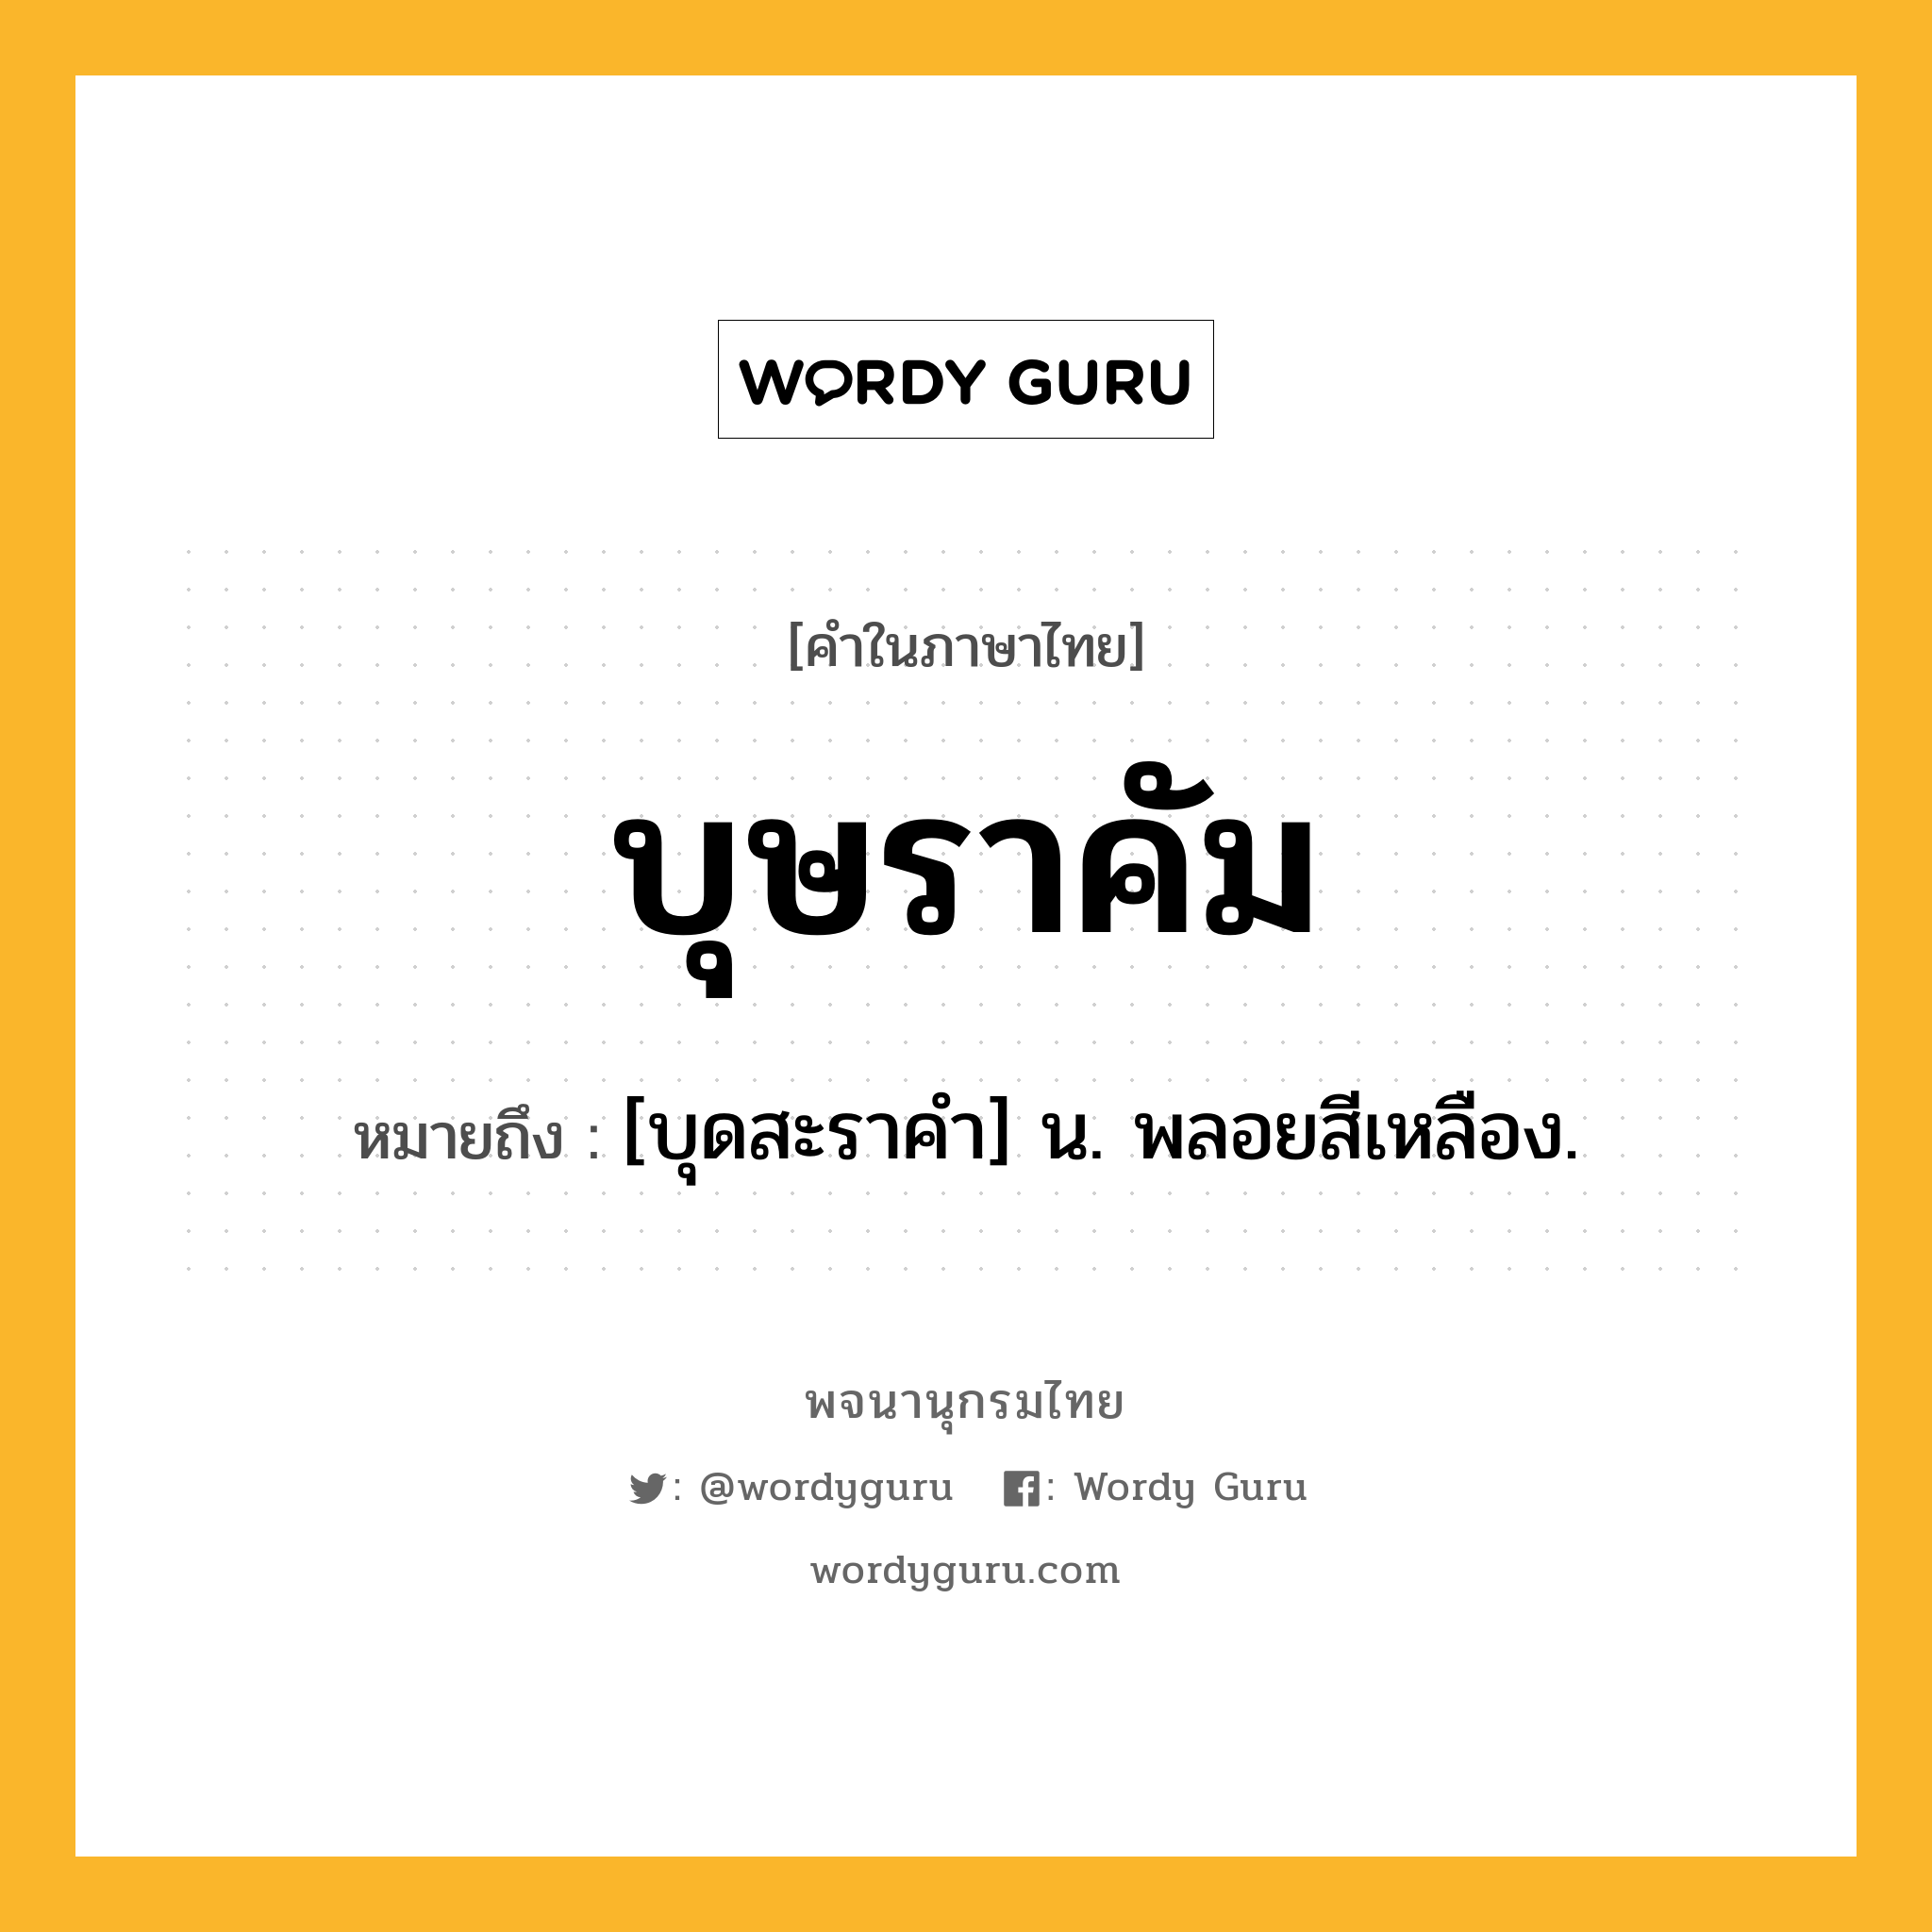 บุษราคัม ความหมาย หมายถึงอะไร?, คำในภาษาไทย บุษราคัม หมายถึง [บุดสะราคํา] น. พลอยสีเหลือง.